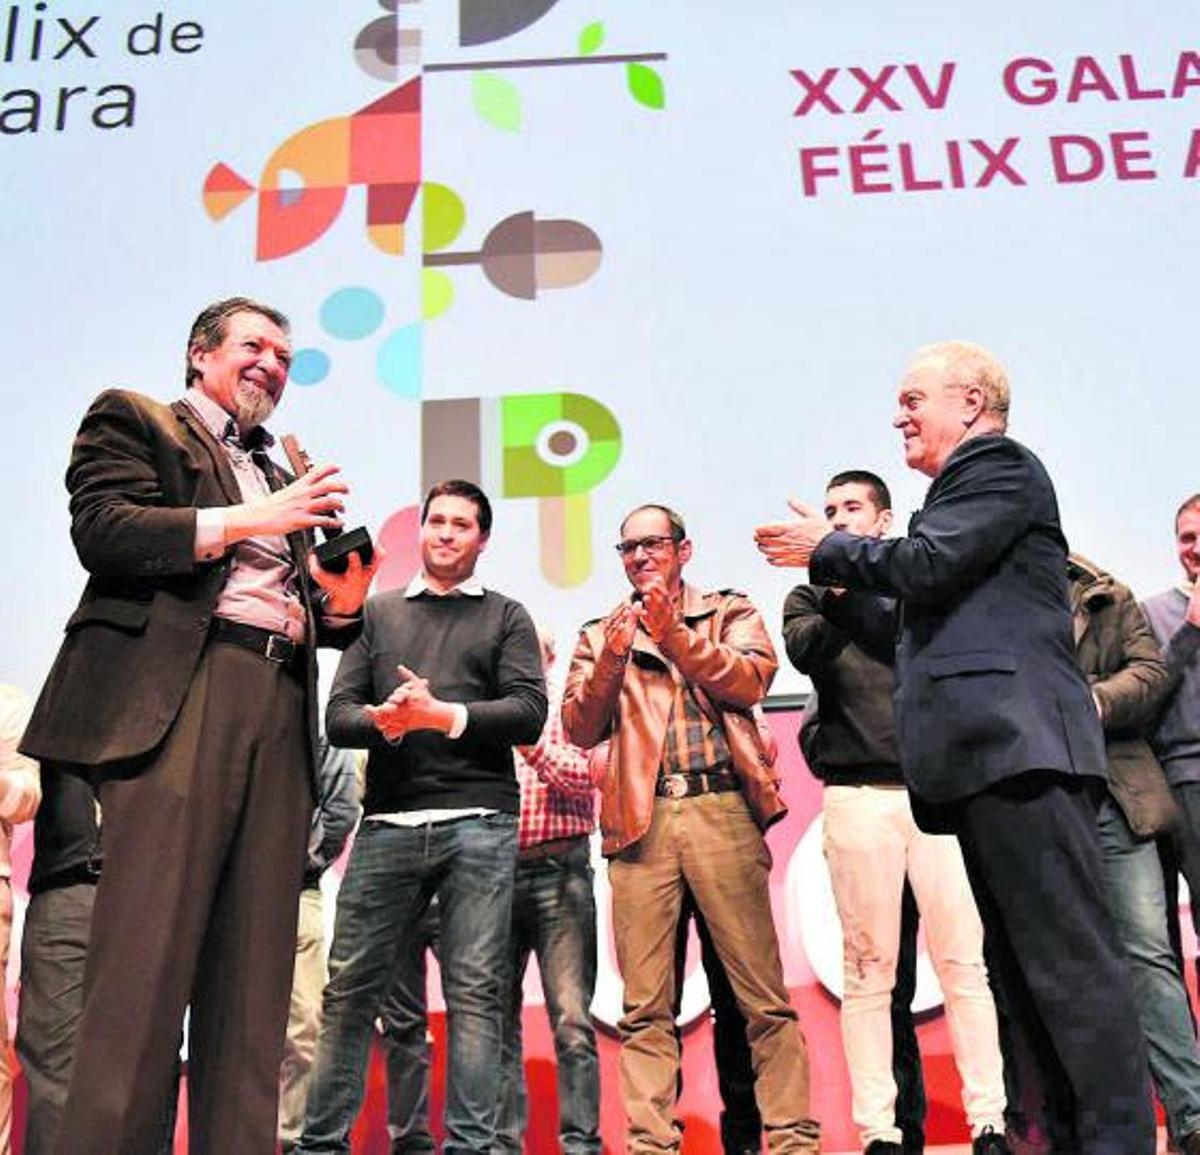 El presidente de la DPH, Miguel Gracia, aplaude a Enrique Fantova al recoger el galardón. | VERÓNICA LACASA